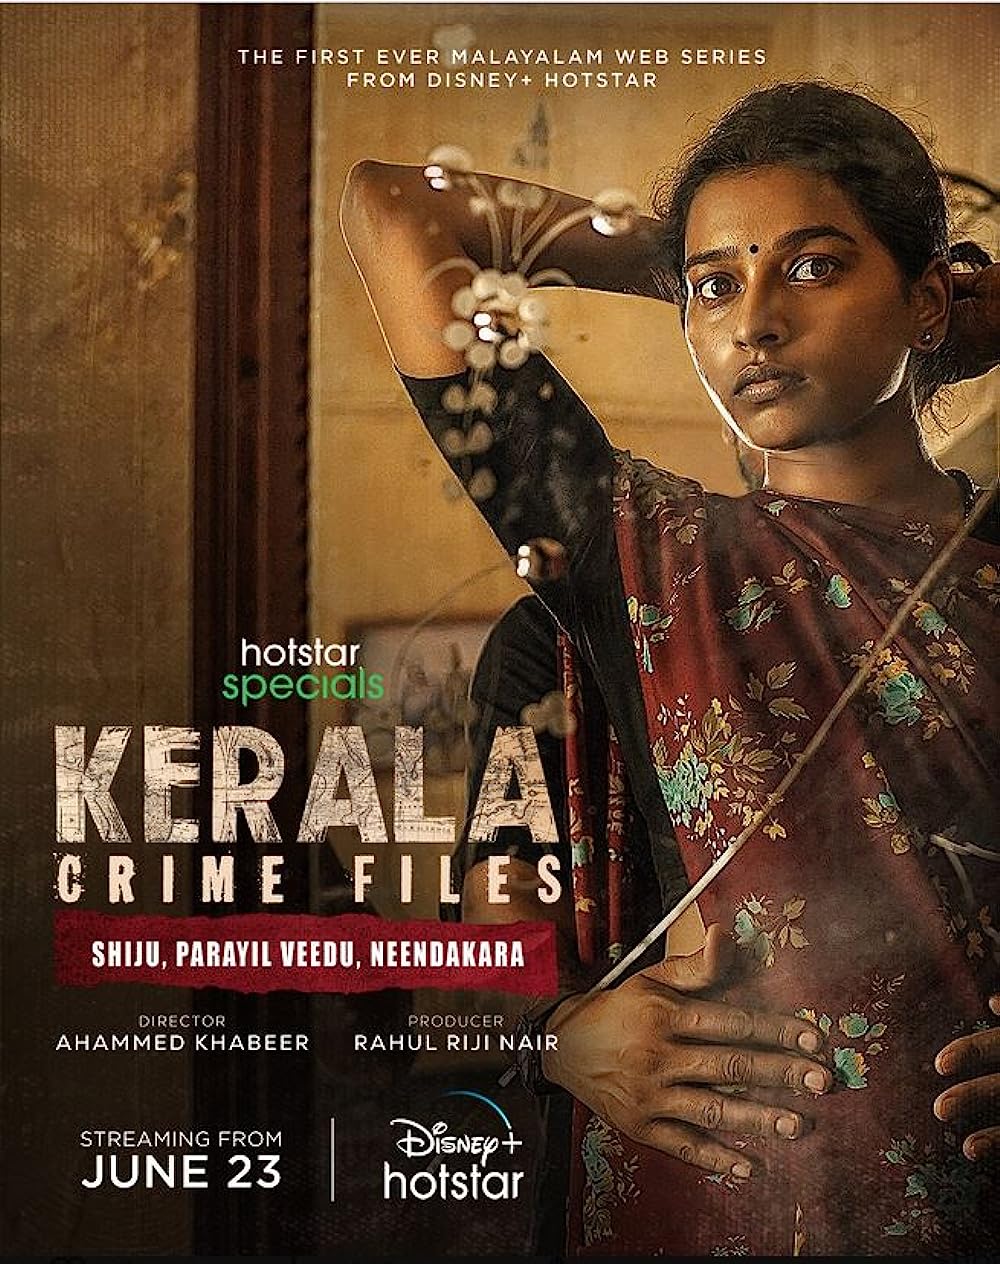 Kerala Crime